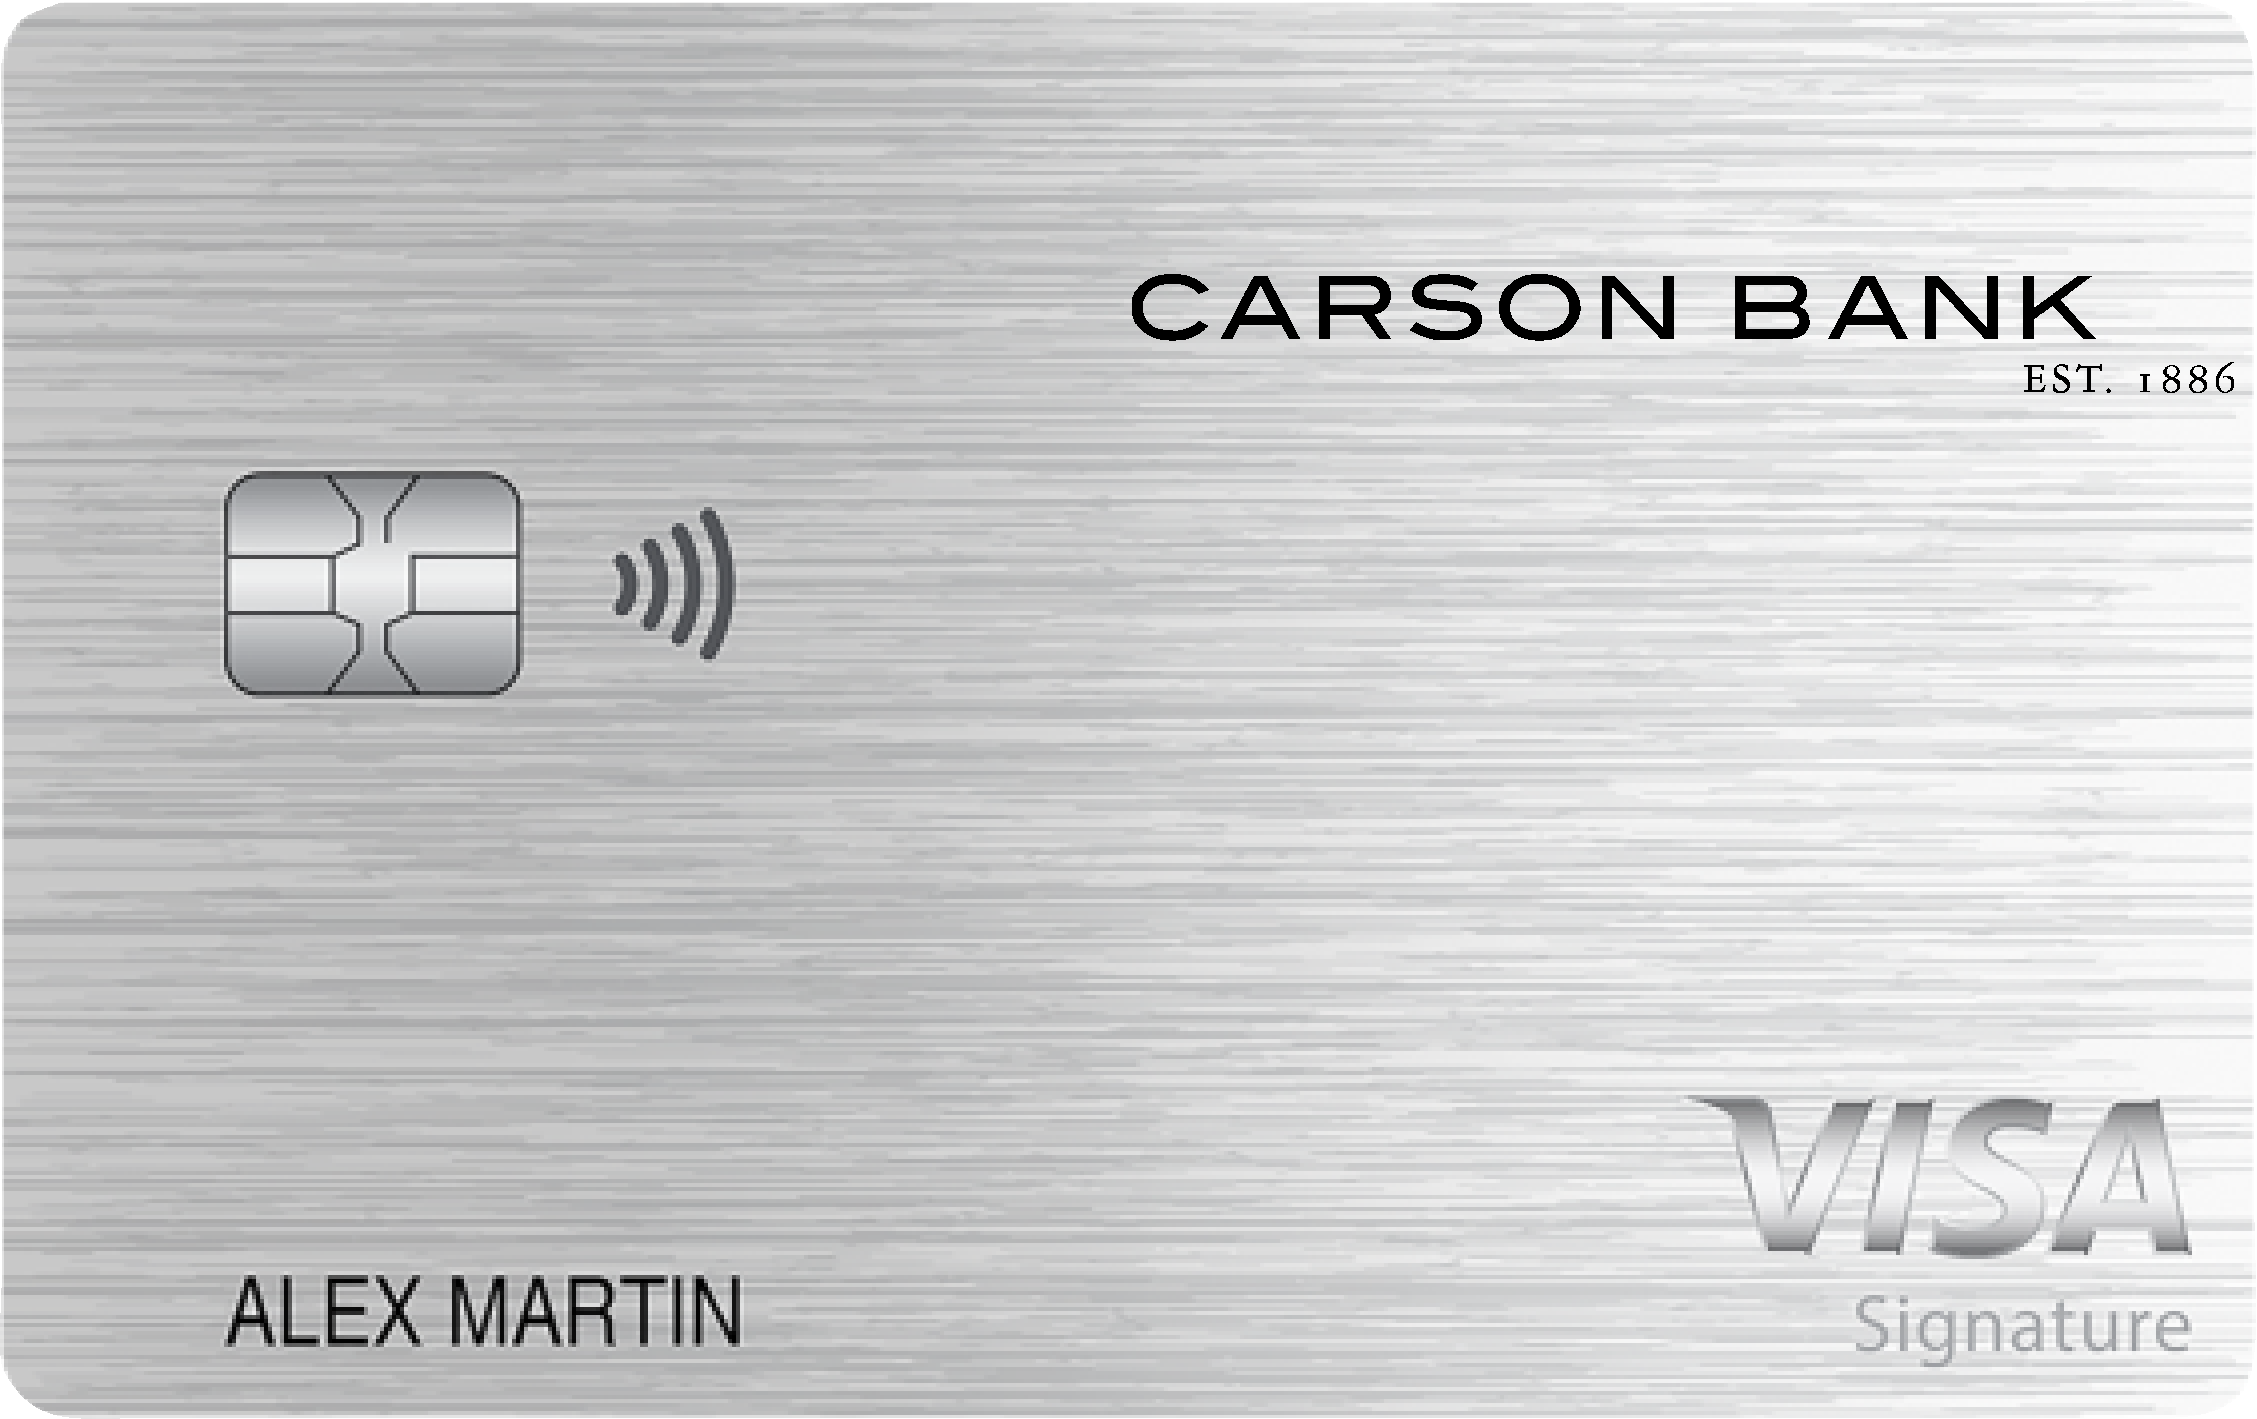 Carson Bank Max Cash Preferred Card